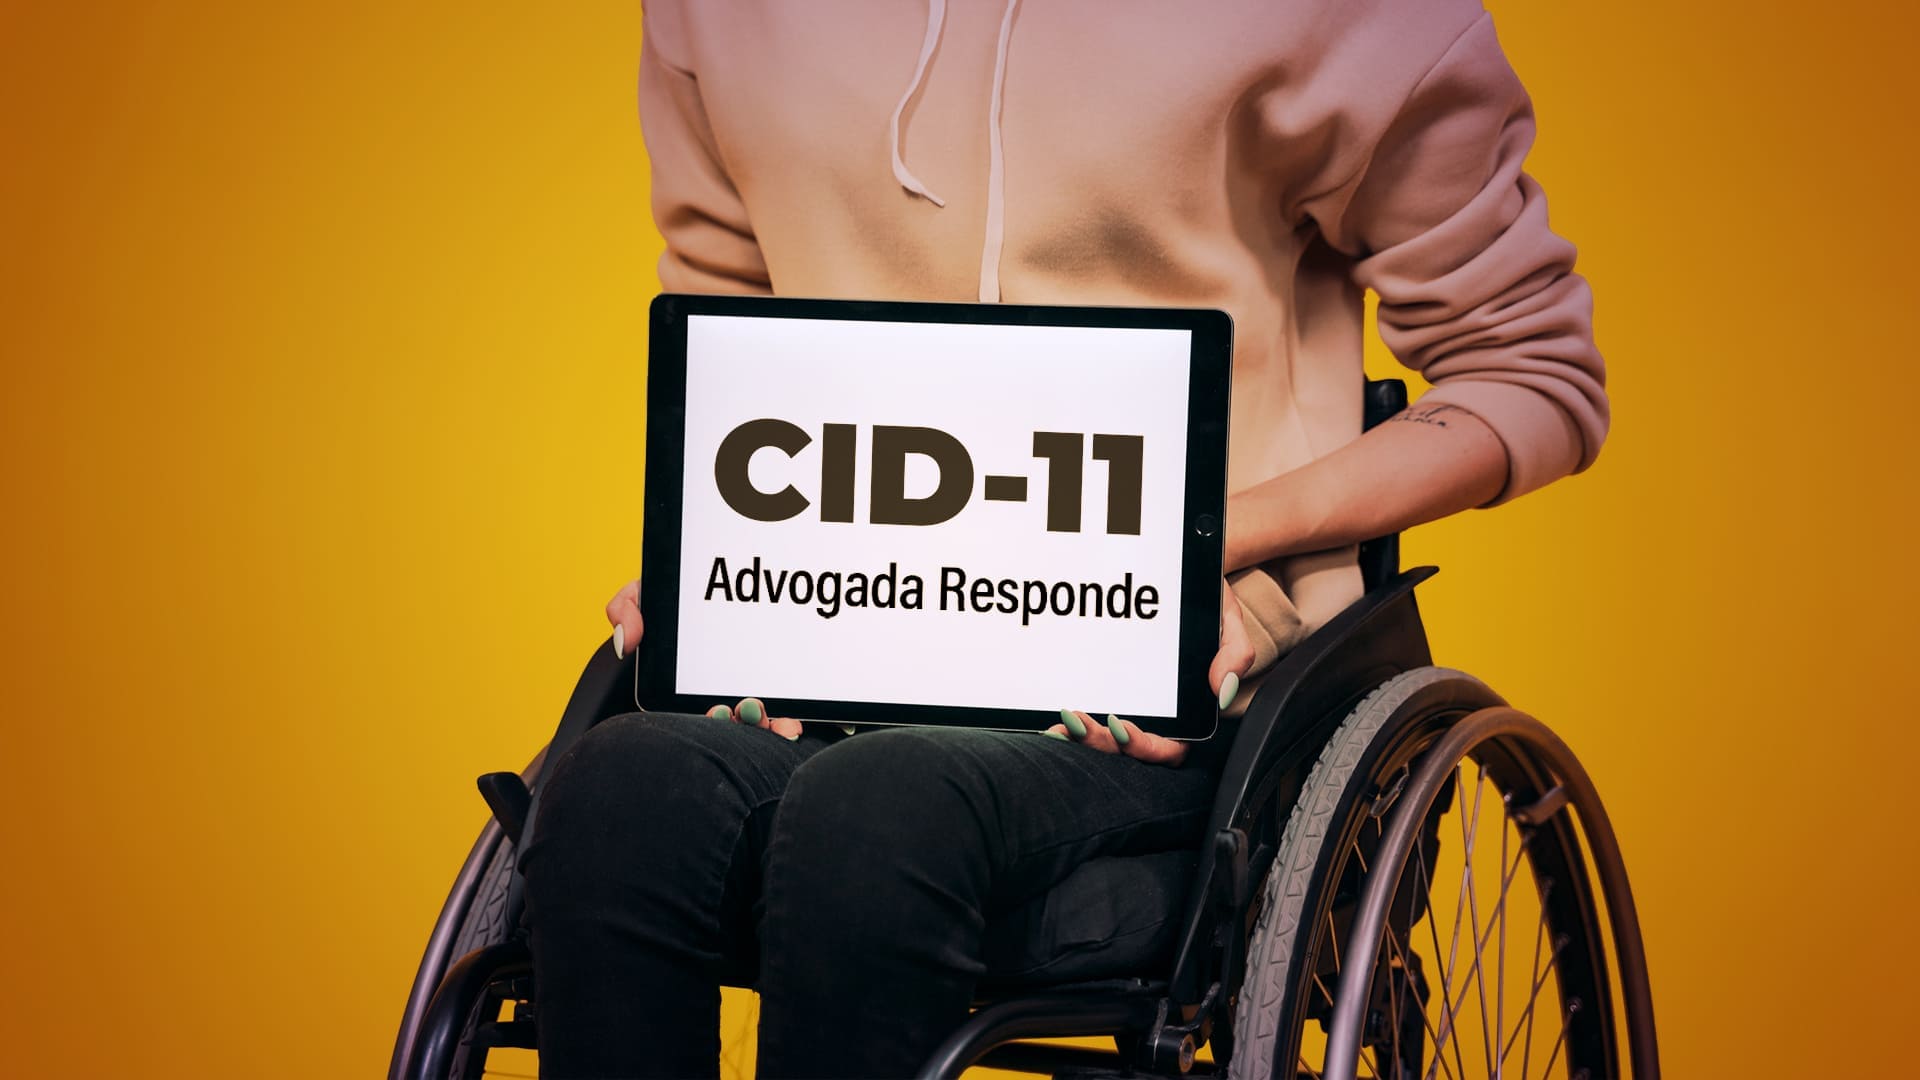 Foto de pessoa em cadeira de rodas mostrando a tela de um tablet com o nome CID-11, Advogada Responde. Ilustra o que mudou com a atualização da CID (Classificação Internacional de Doenças).